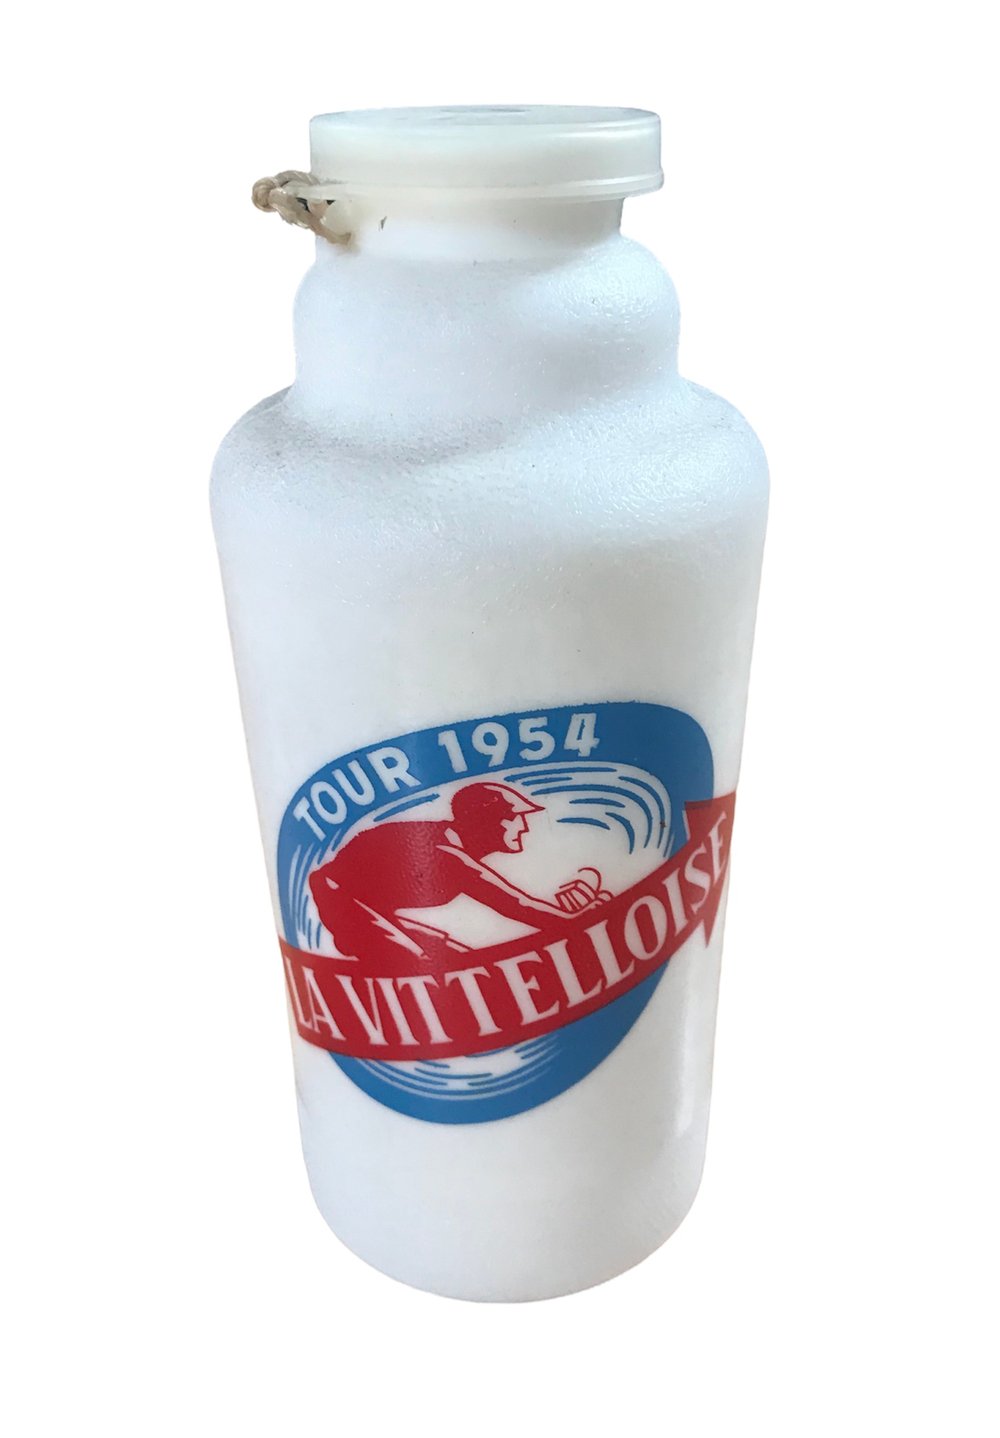 1954 - Tour de France / La Vittelloise water bottle 